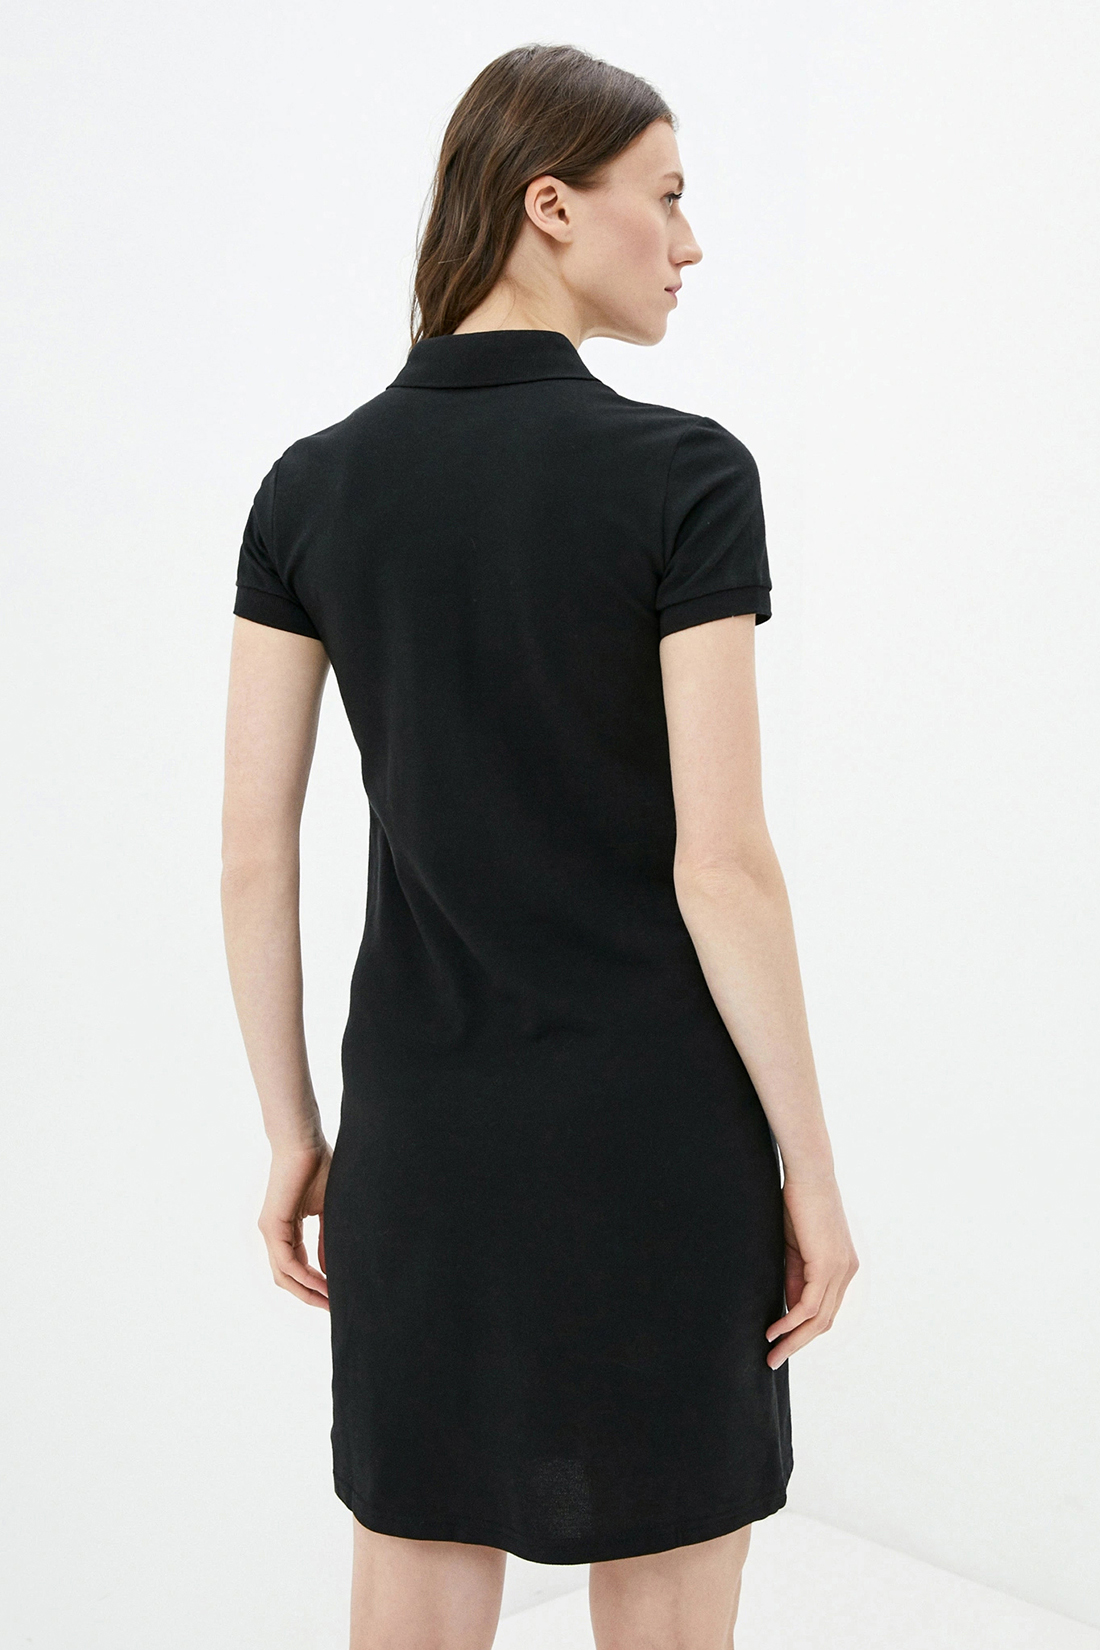 Платье женское Baon B451201 черное XL